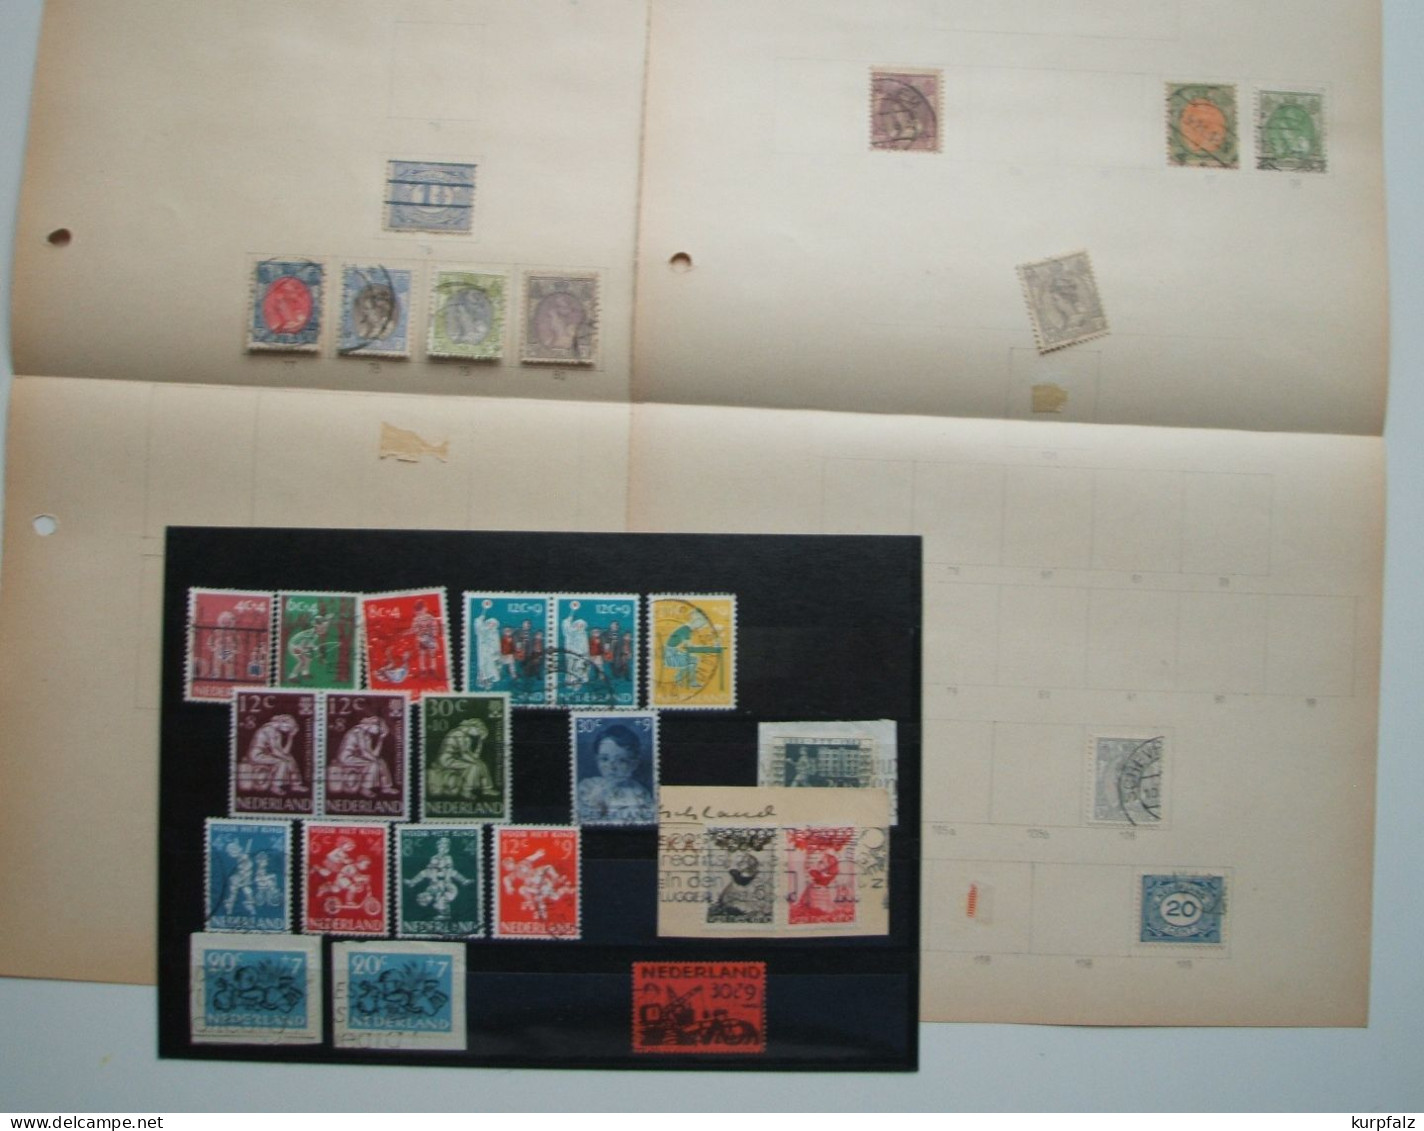 Niederlande - Briefmarken-Konvolut alt + neu, ** + ⊙, alte Blätter + Steckseiten